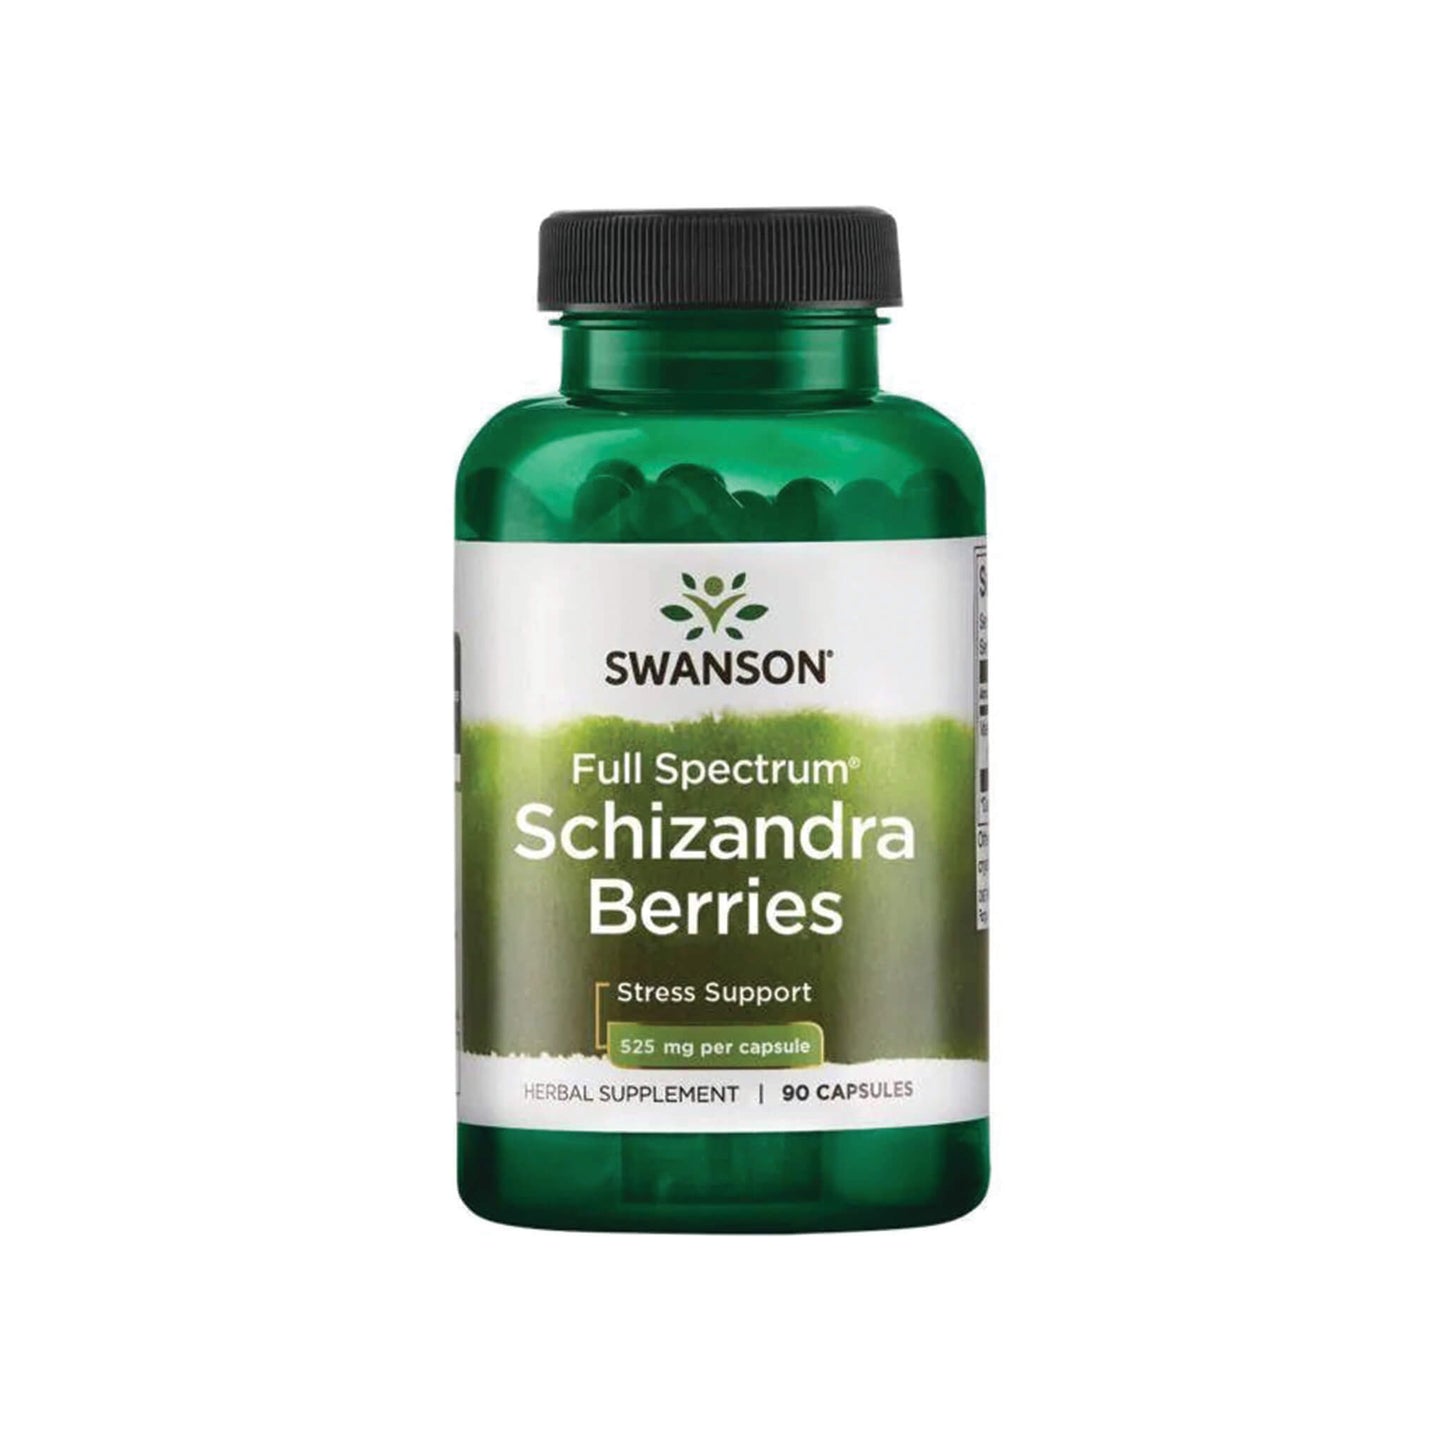 Swanson, Full Spectrum Schizandra Berries, 525mg - 90 Capsules